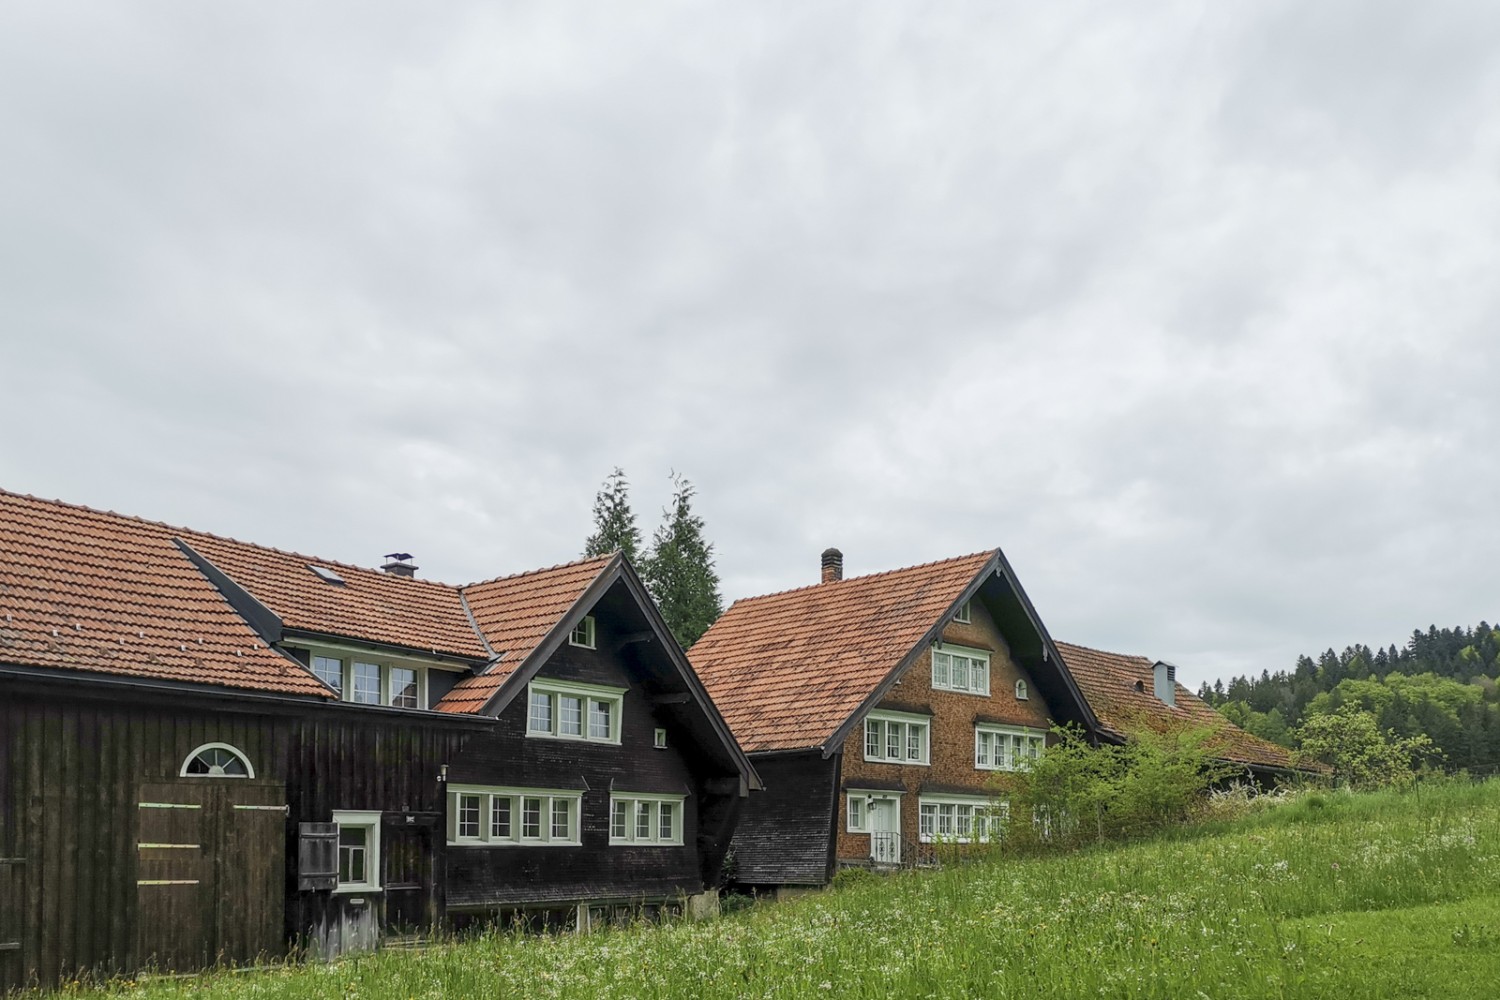 À Riemen, groupe caractéristique de fermes du canton d’Appenzell. Photo: Evelyne Zaugg